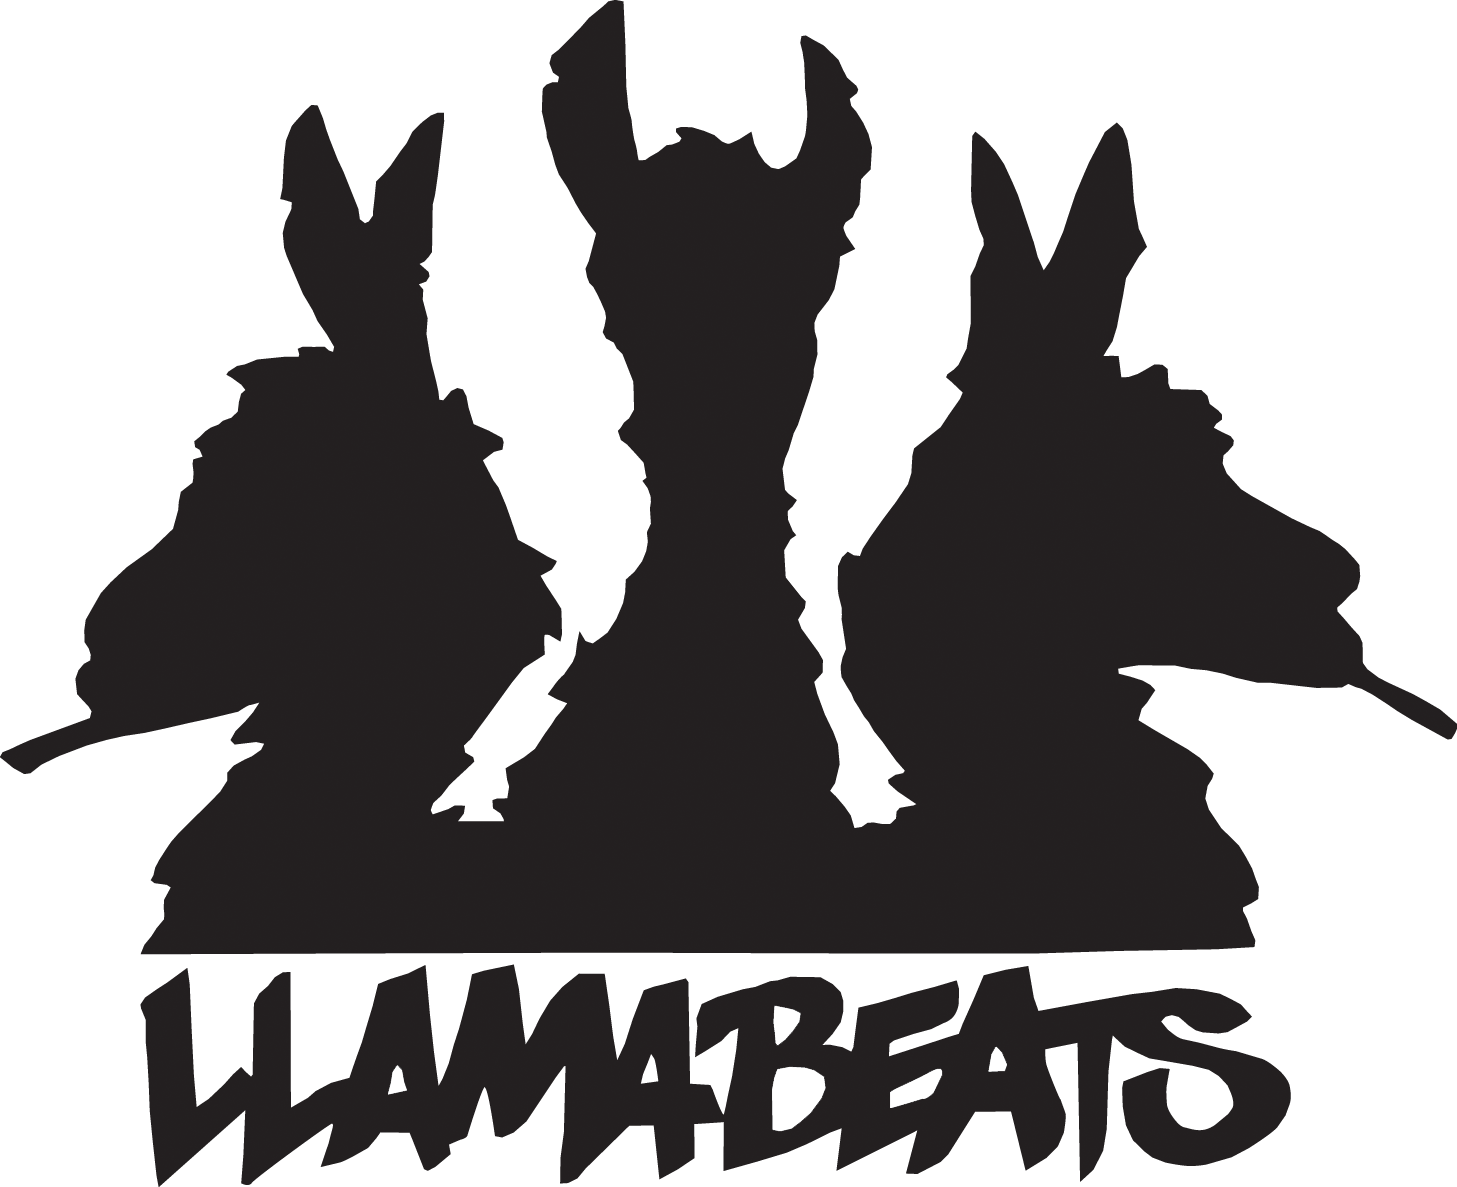 Llamabeats